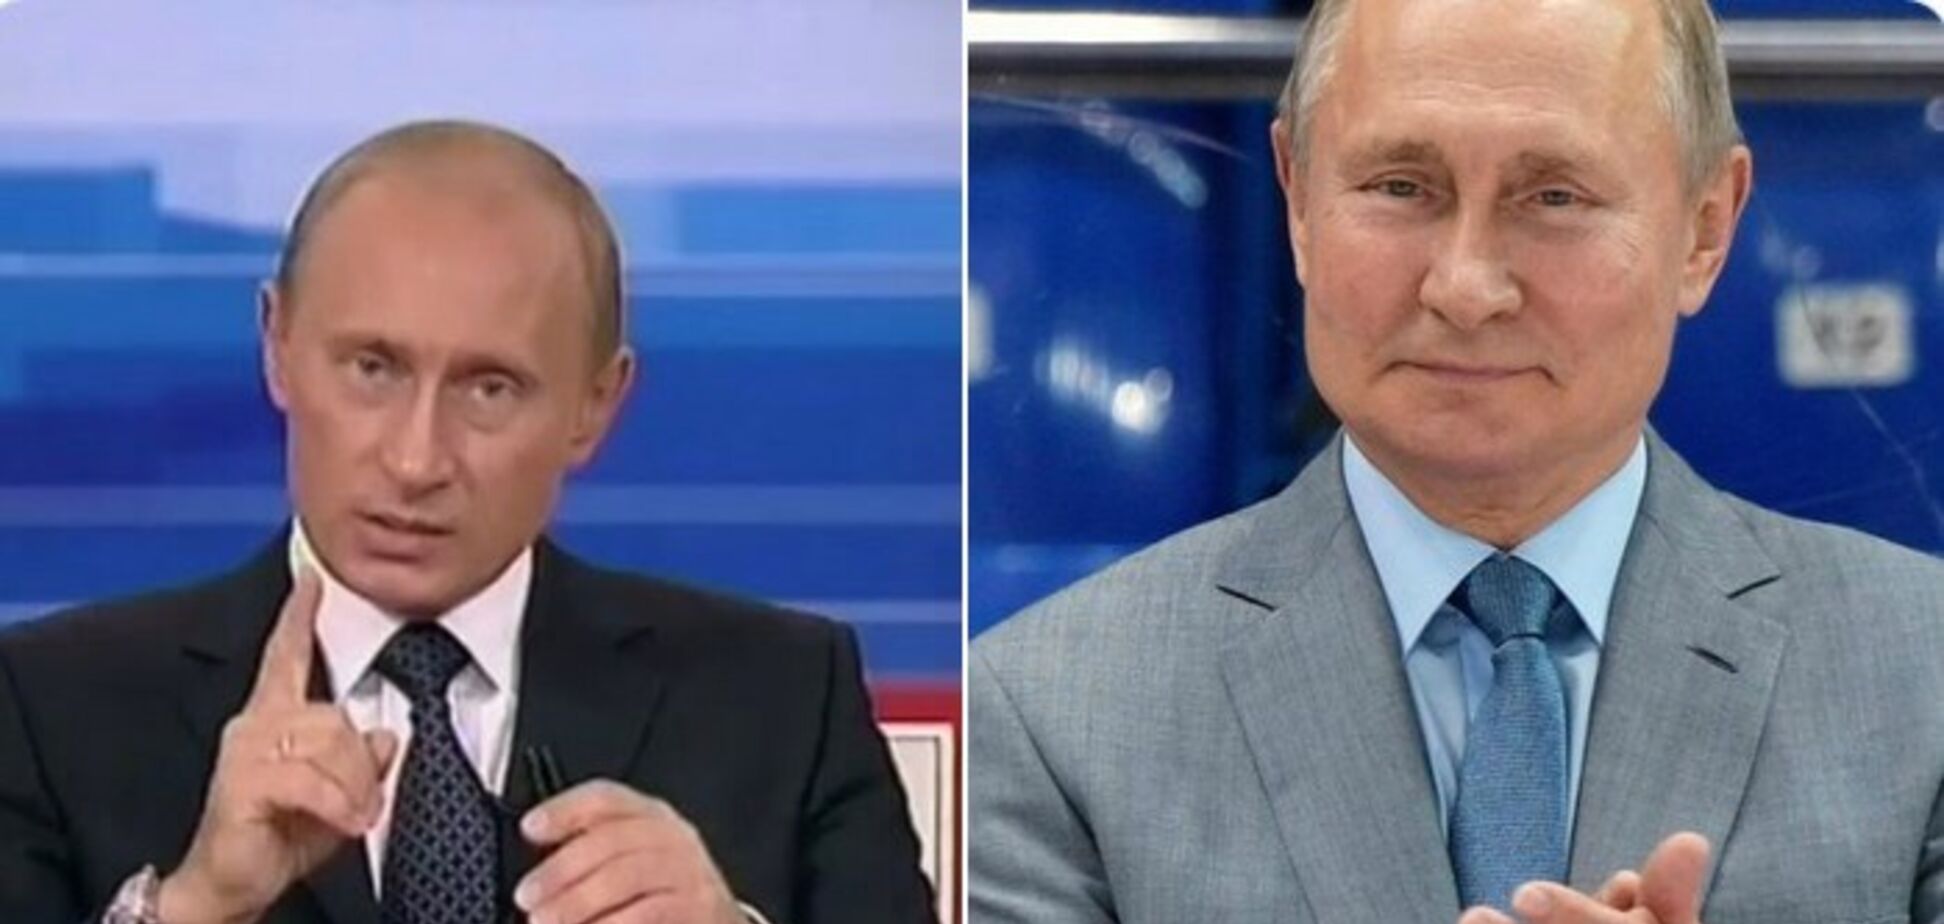 'Одна і та ж особа?!' Кардинальні зміни в зовнішності Путіна розбурхали мережу. Фото